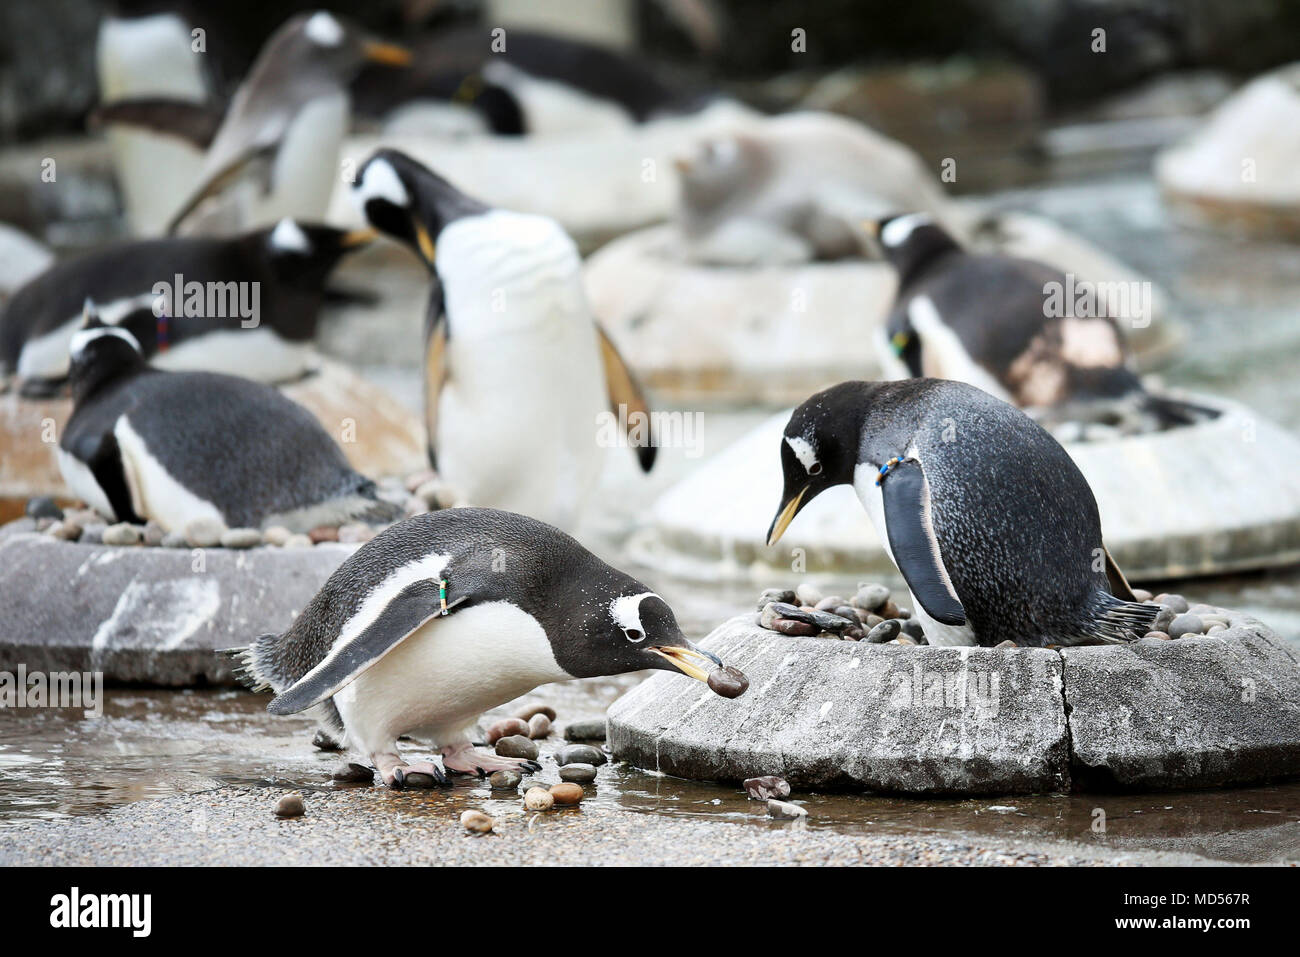 Gentoo's Edinburgh Zoo Pinguine beginnen ihre Balz wird angezeigt, und die Frauen sitzen auf Verschachtelung Ringe, die Männchen durch Kiesel auf der Suche nach den angenehmsten zu Ihrem gewählten Mate präsentieren zu sichten. Stockfoto